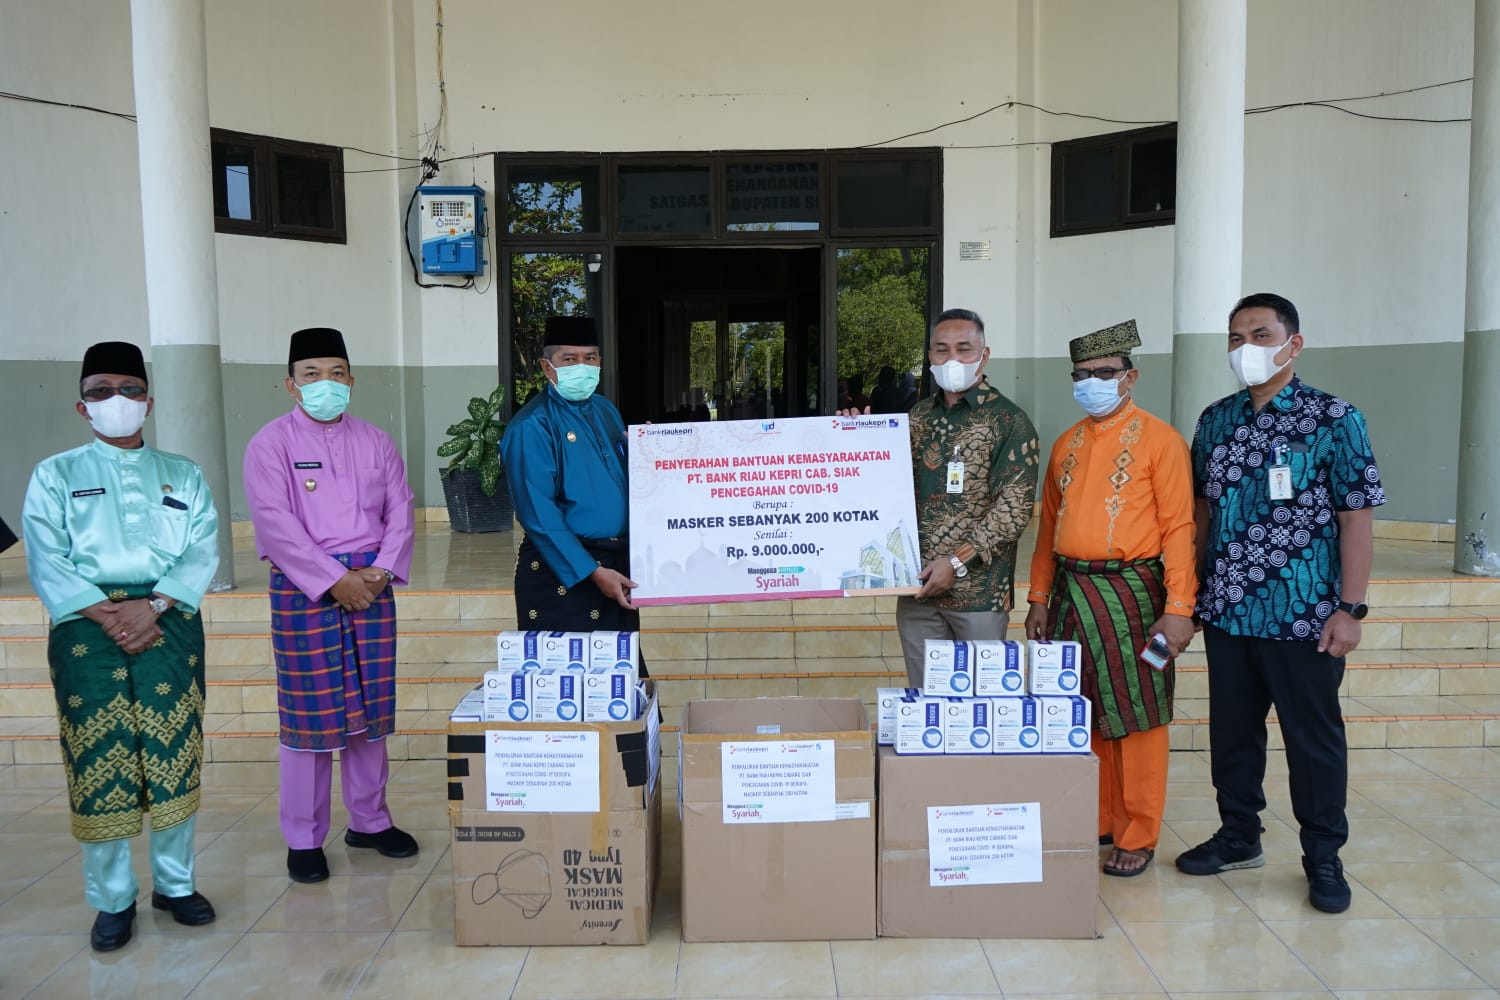 Cegah Penyebaran Covid-19 di Siak, Bank Riaukepri Cabang Siak Salurkan Bantuan Masker